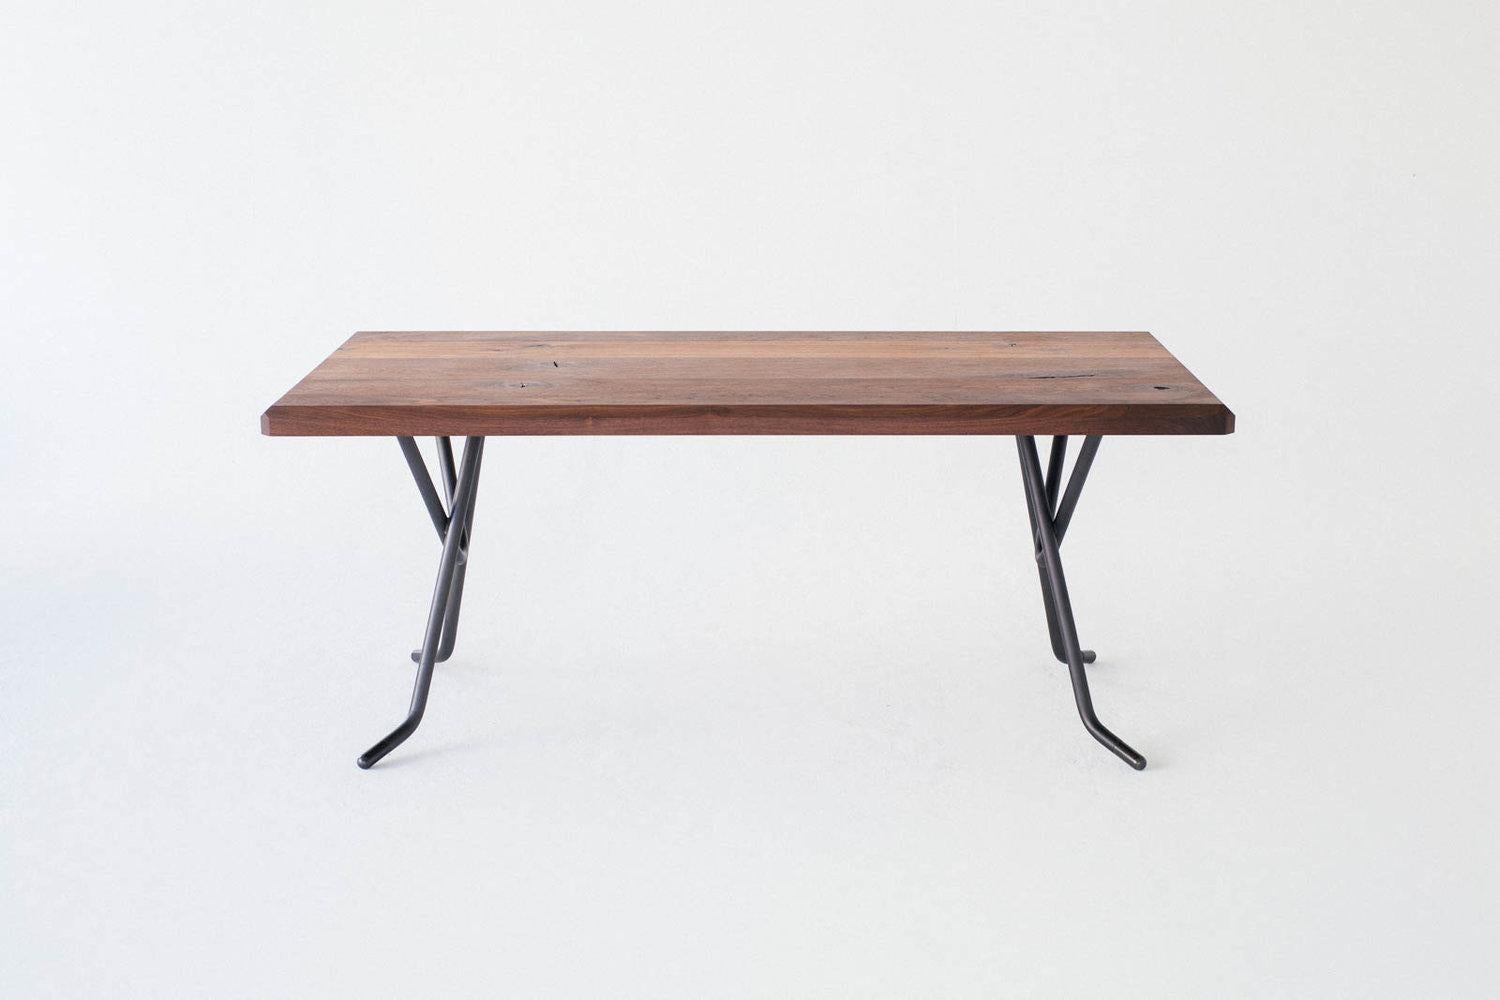 La base Heldon est un design minimal qui donne de la hauteur et de la légèreté à n'importe quel plateau de table. L'acier rond d'un pouce et demi d'épaisseur est incroyablement robuste, sans flexion, et transmet une douce délicatesse avec les